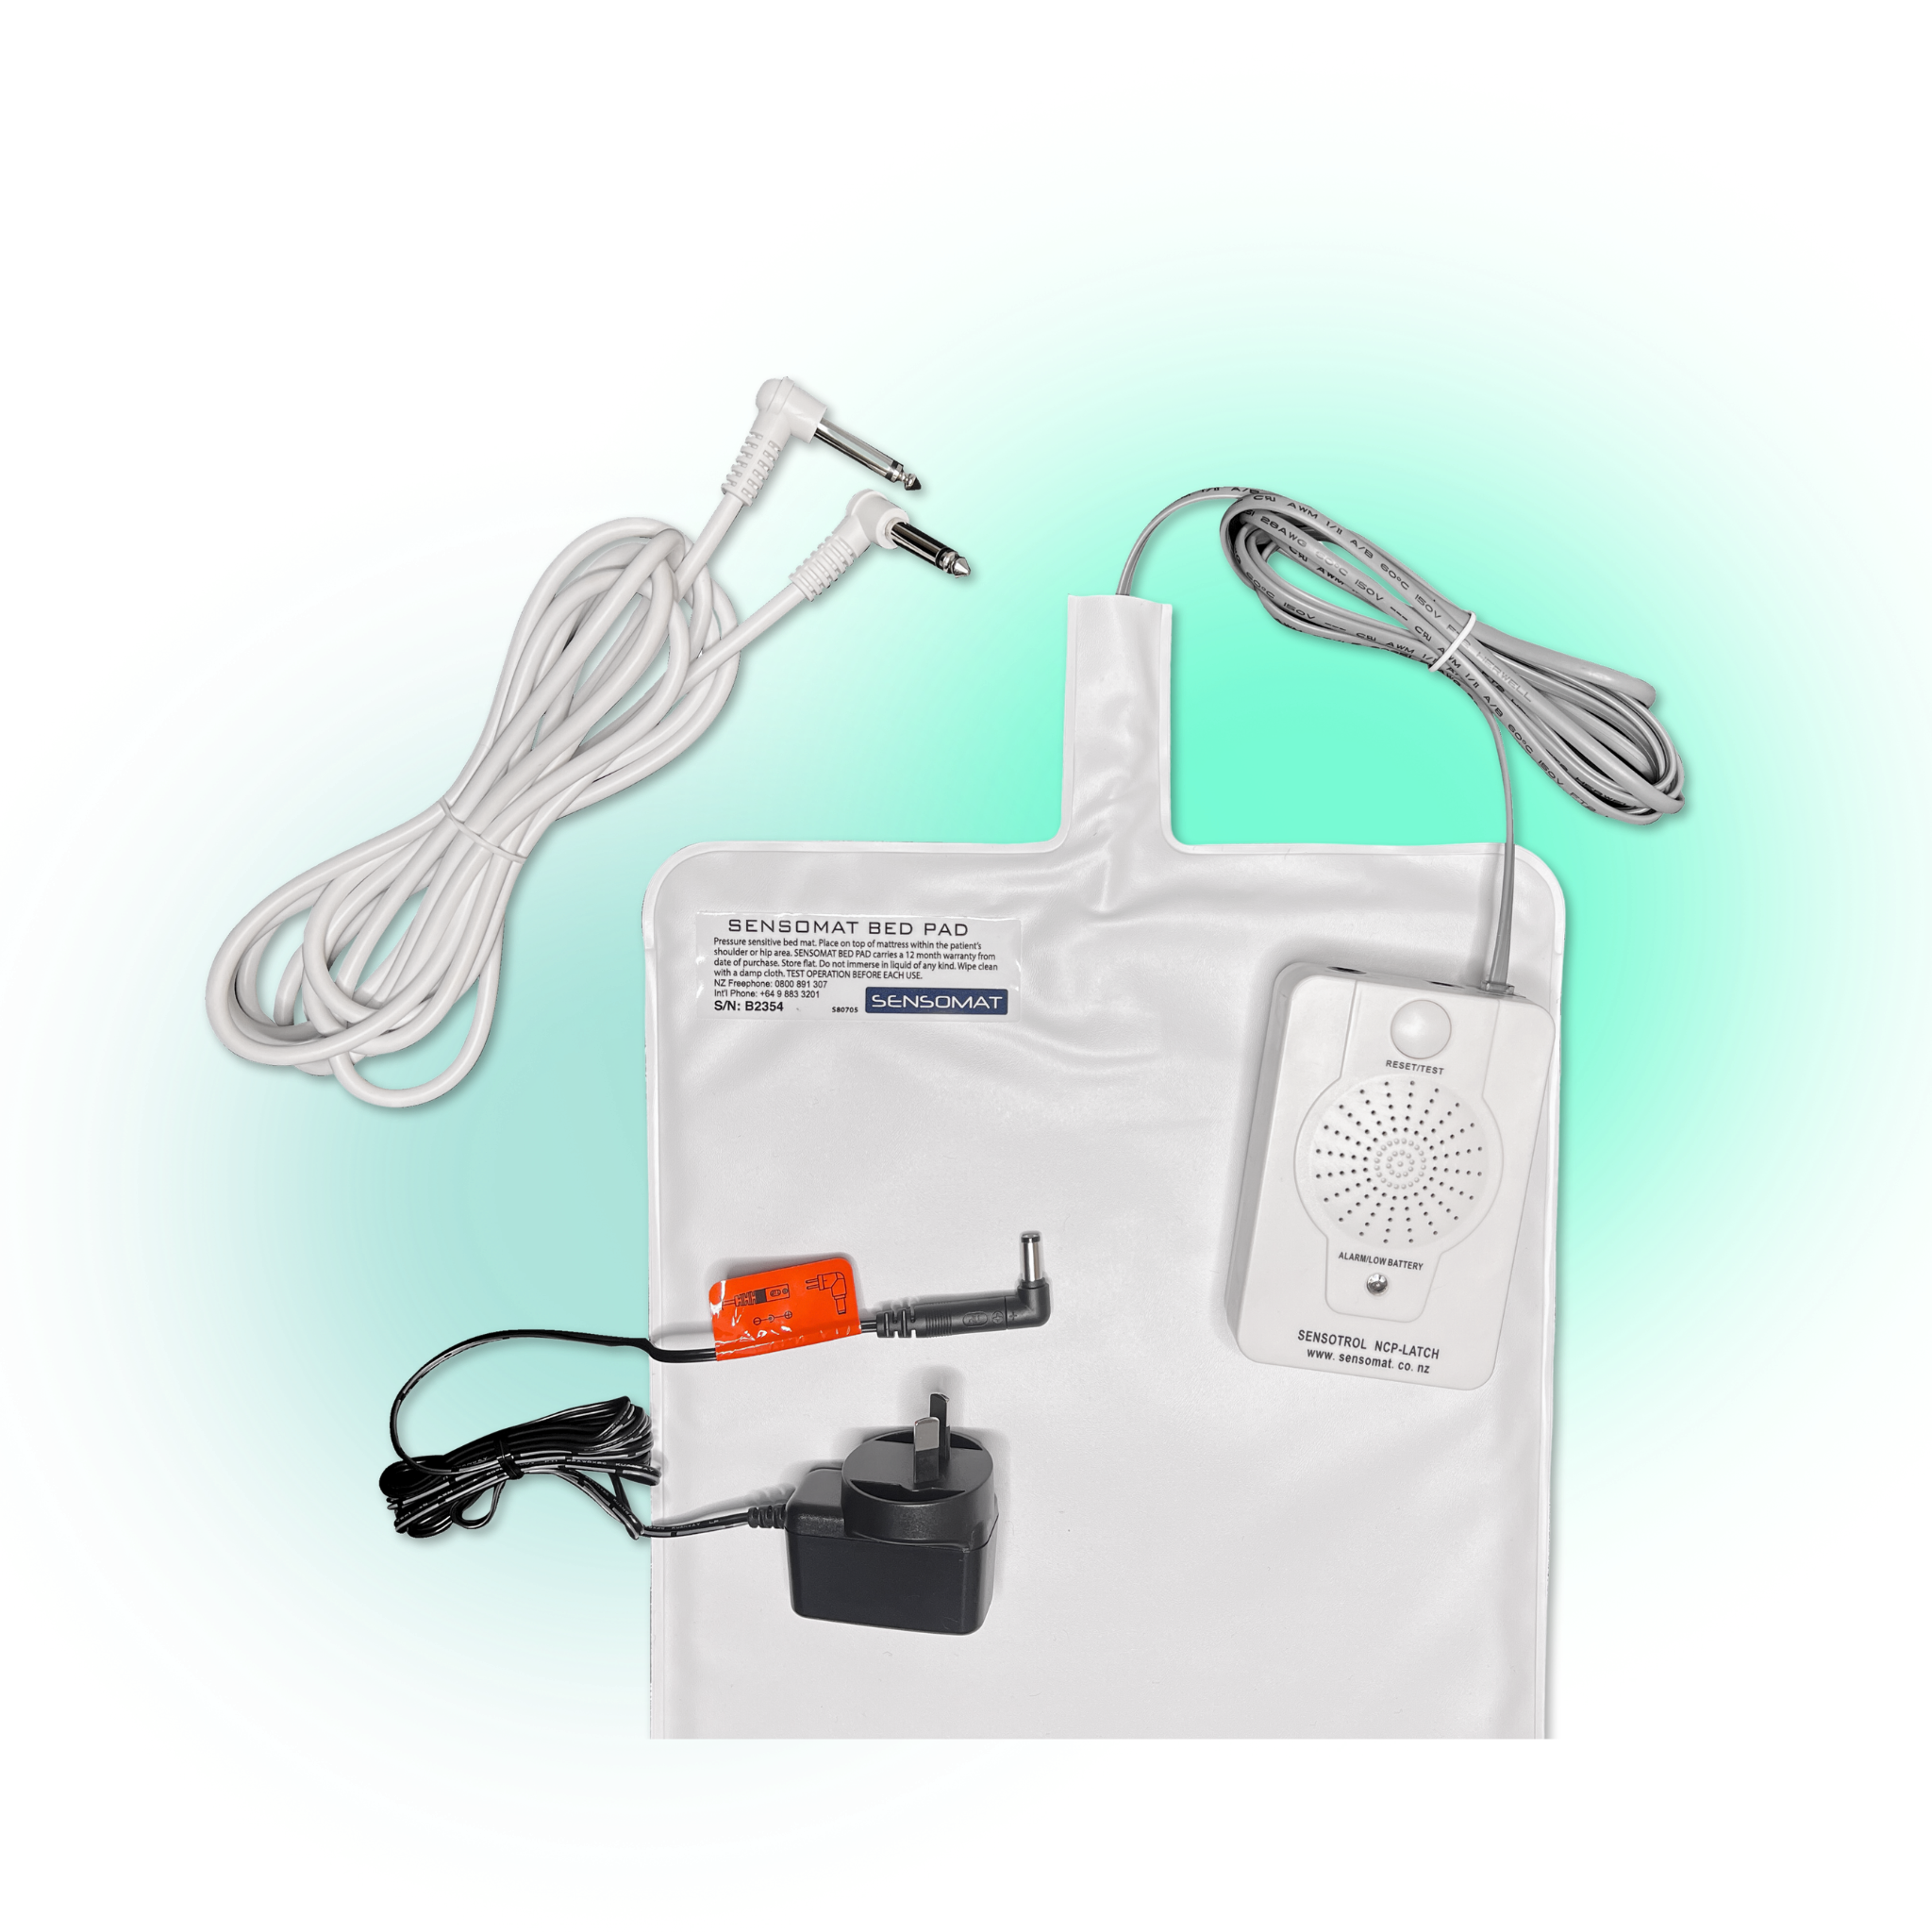 Bed Sensor Kit - Rest Home & Hospital Use